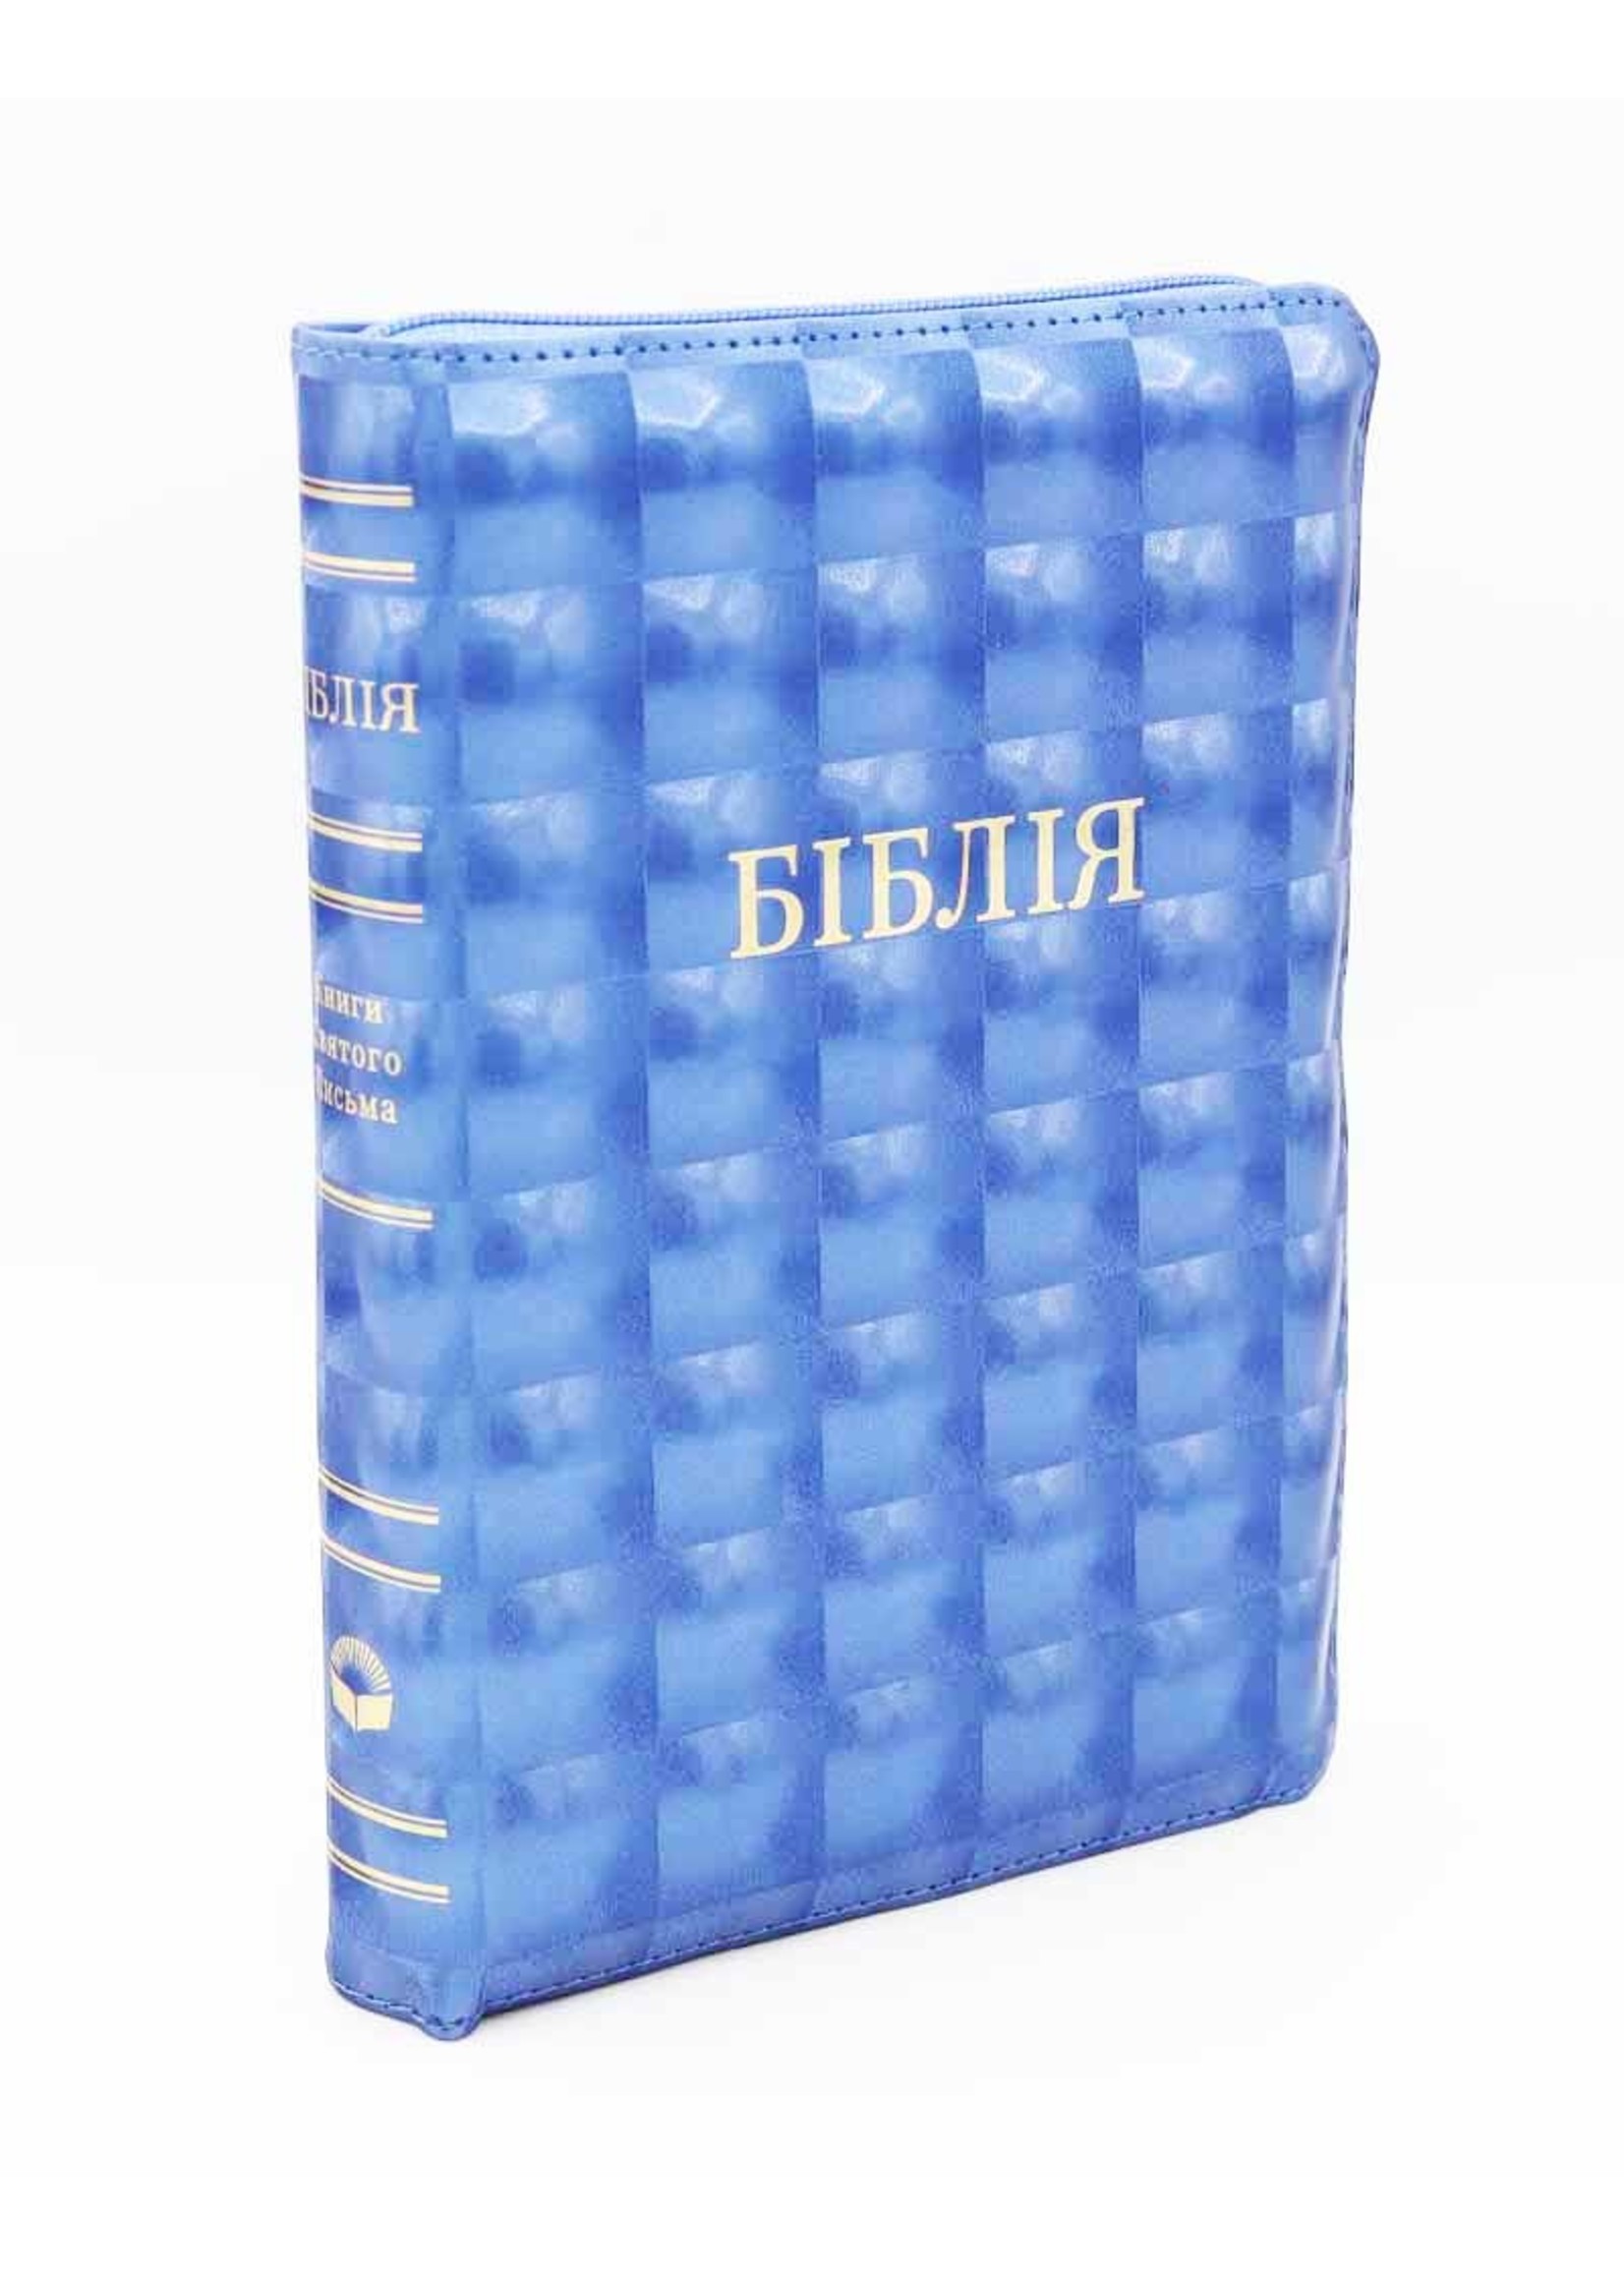 Библия Укр., Каноническая (SYNO), Индексы, Средняя, Синяя